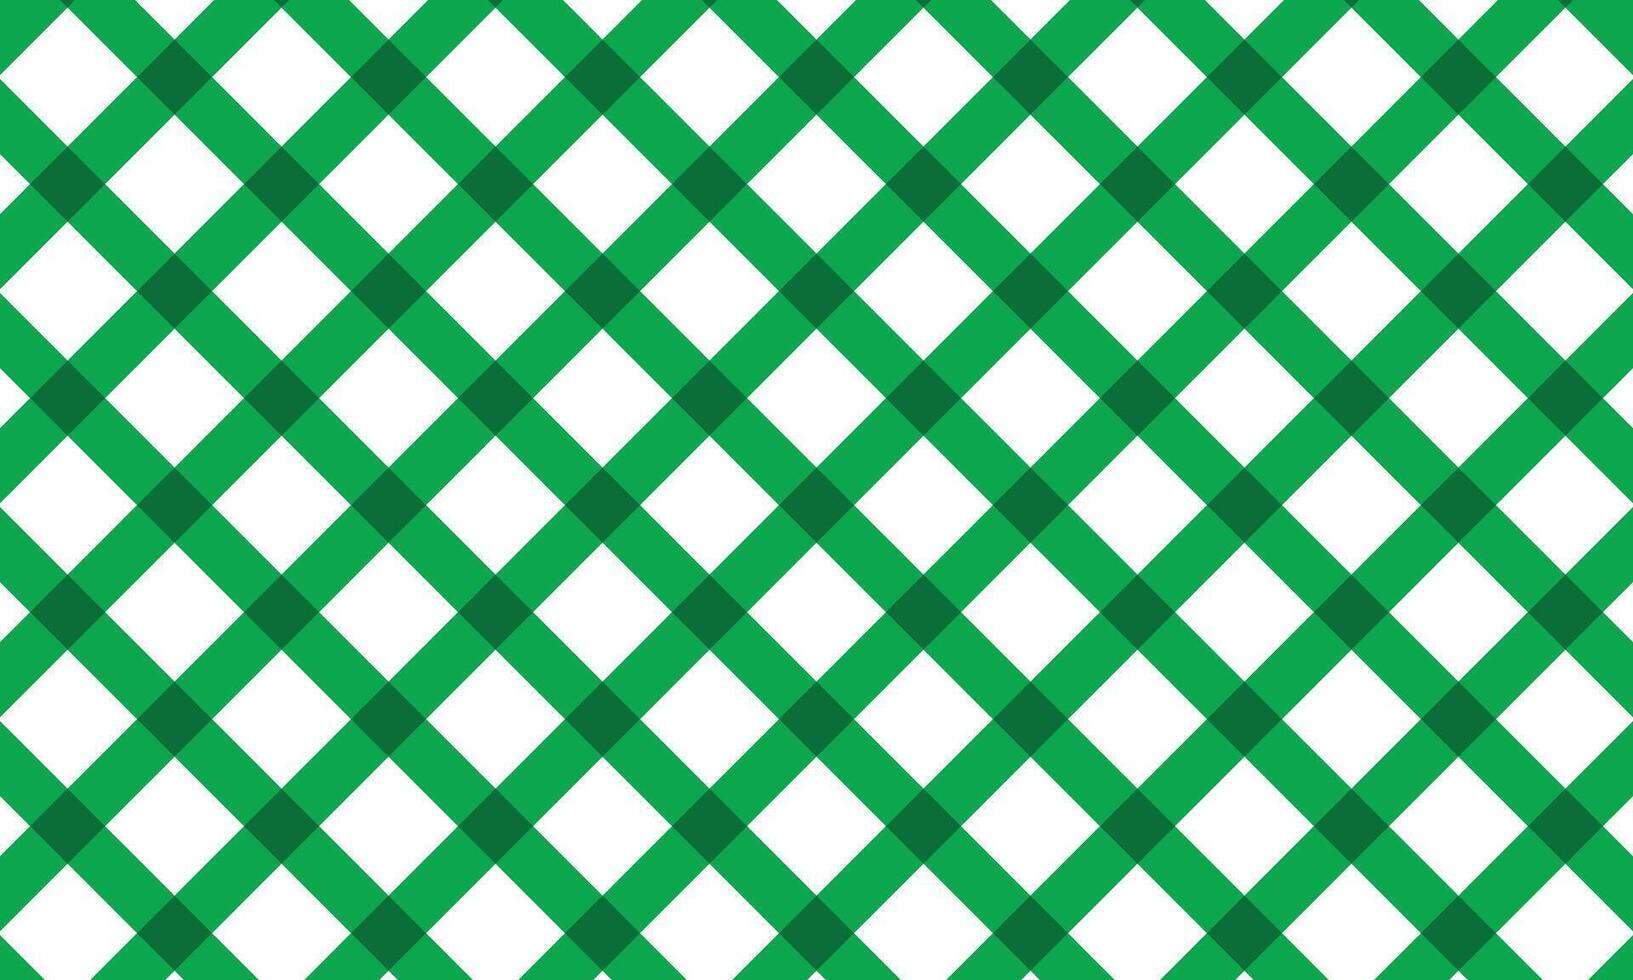 abstract meetkundig lijn patroon kunst vector illustratie